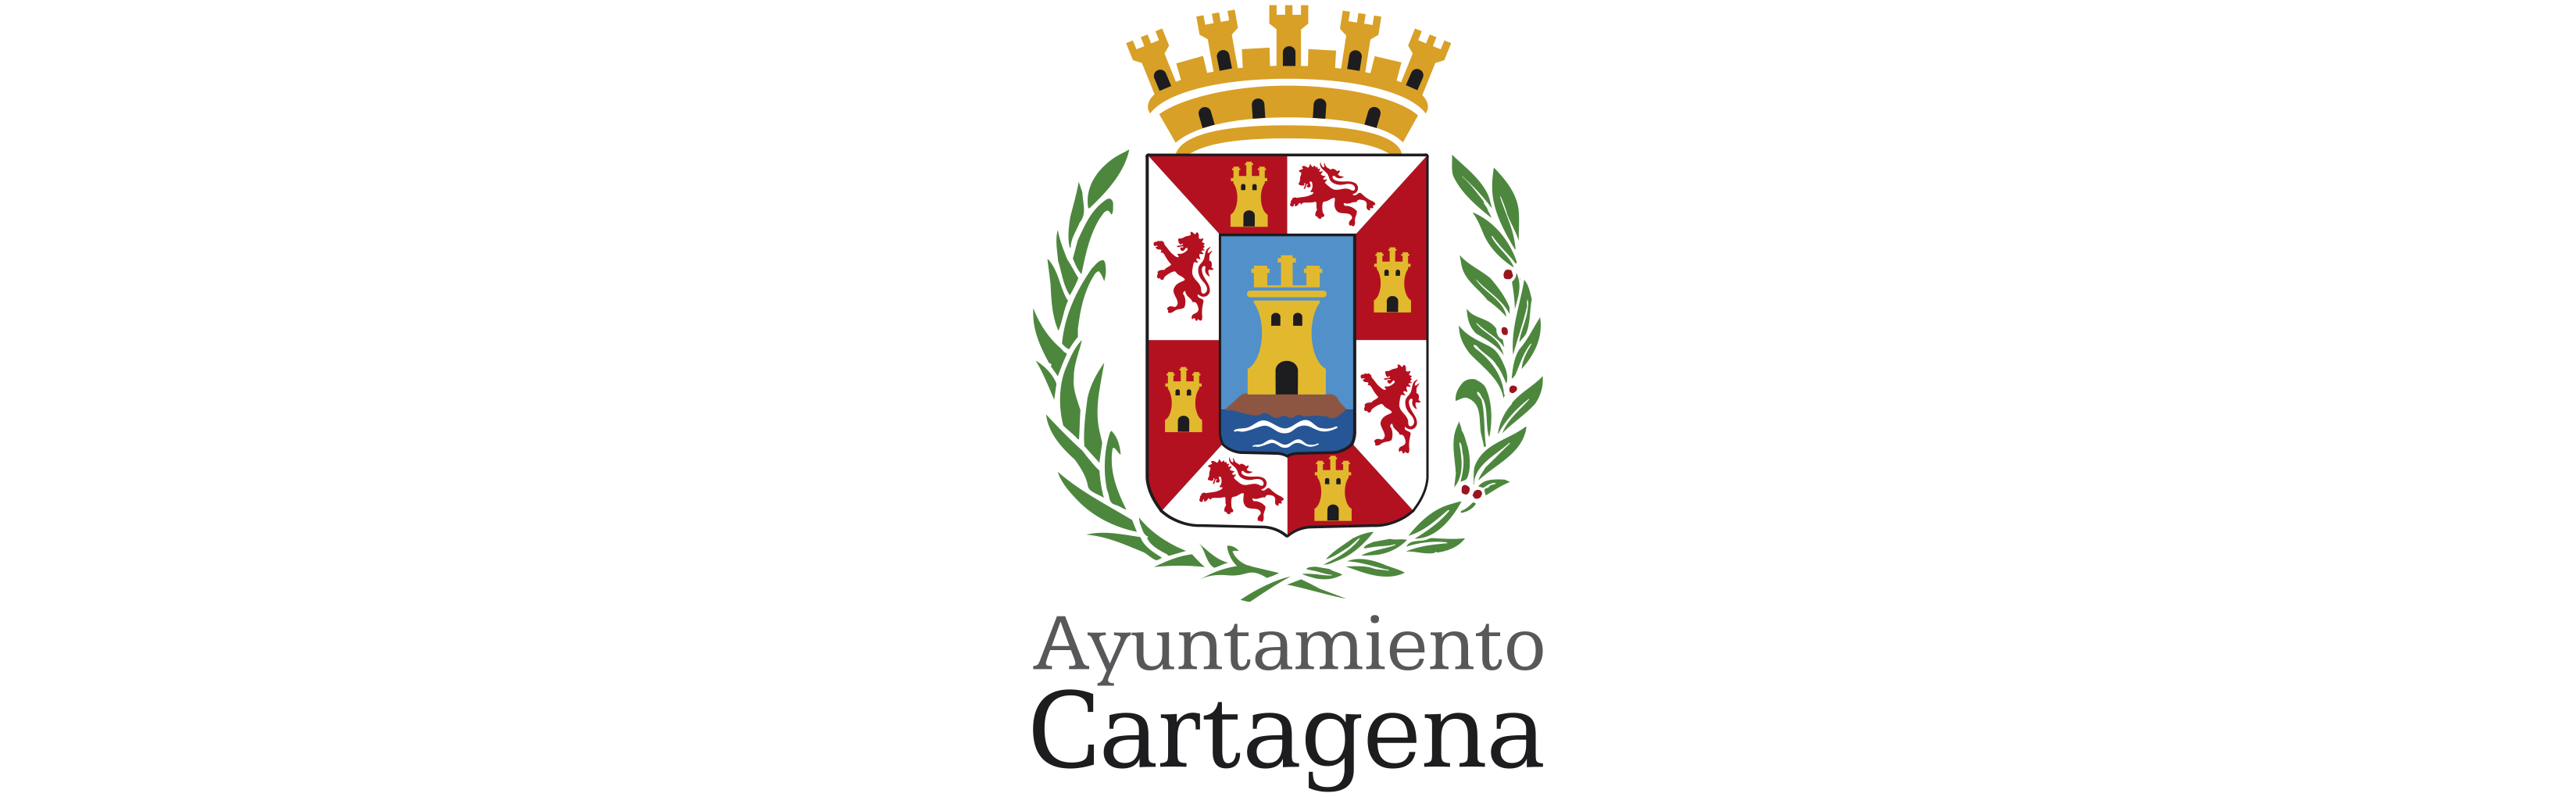 ayuntamiento-cartagena